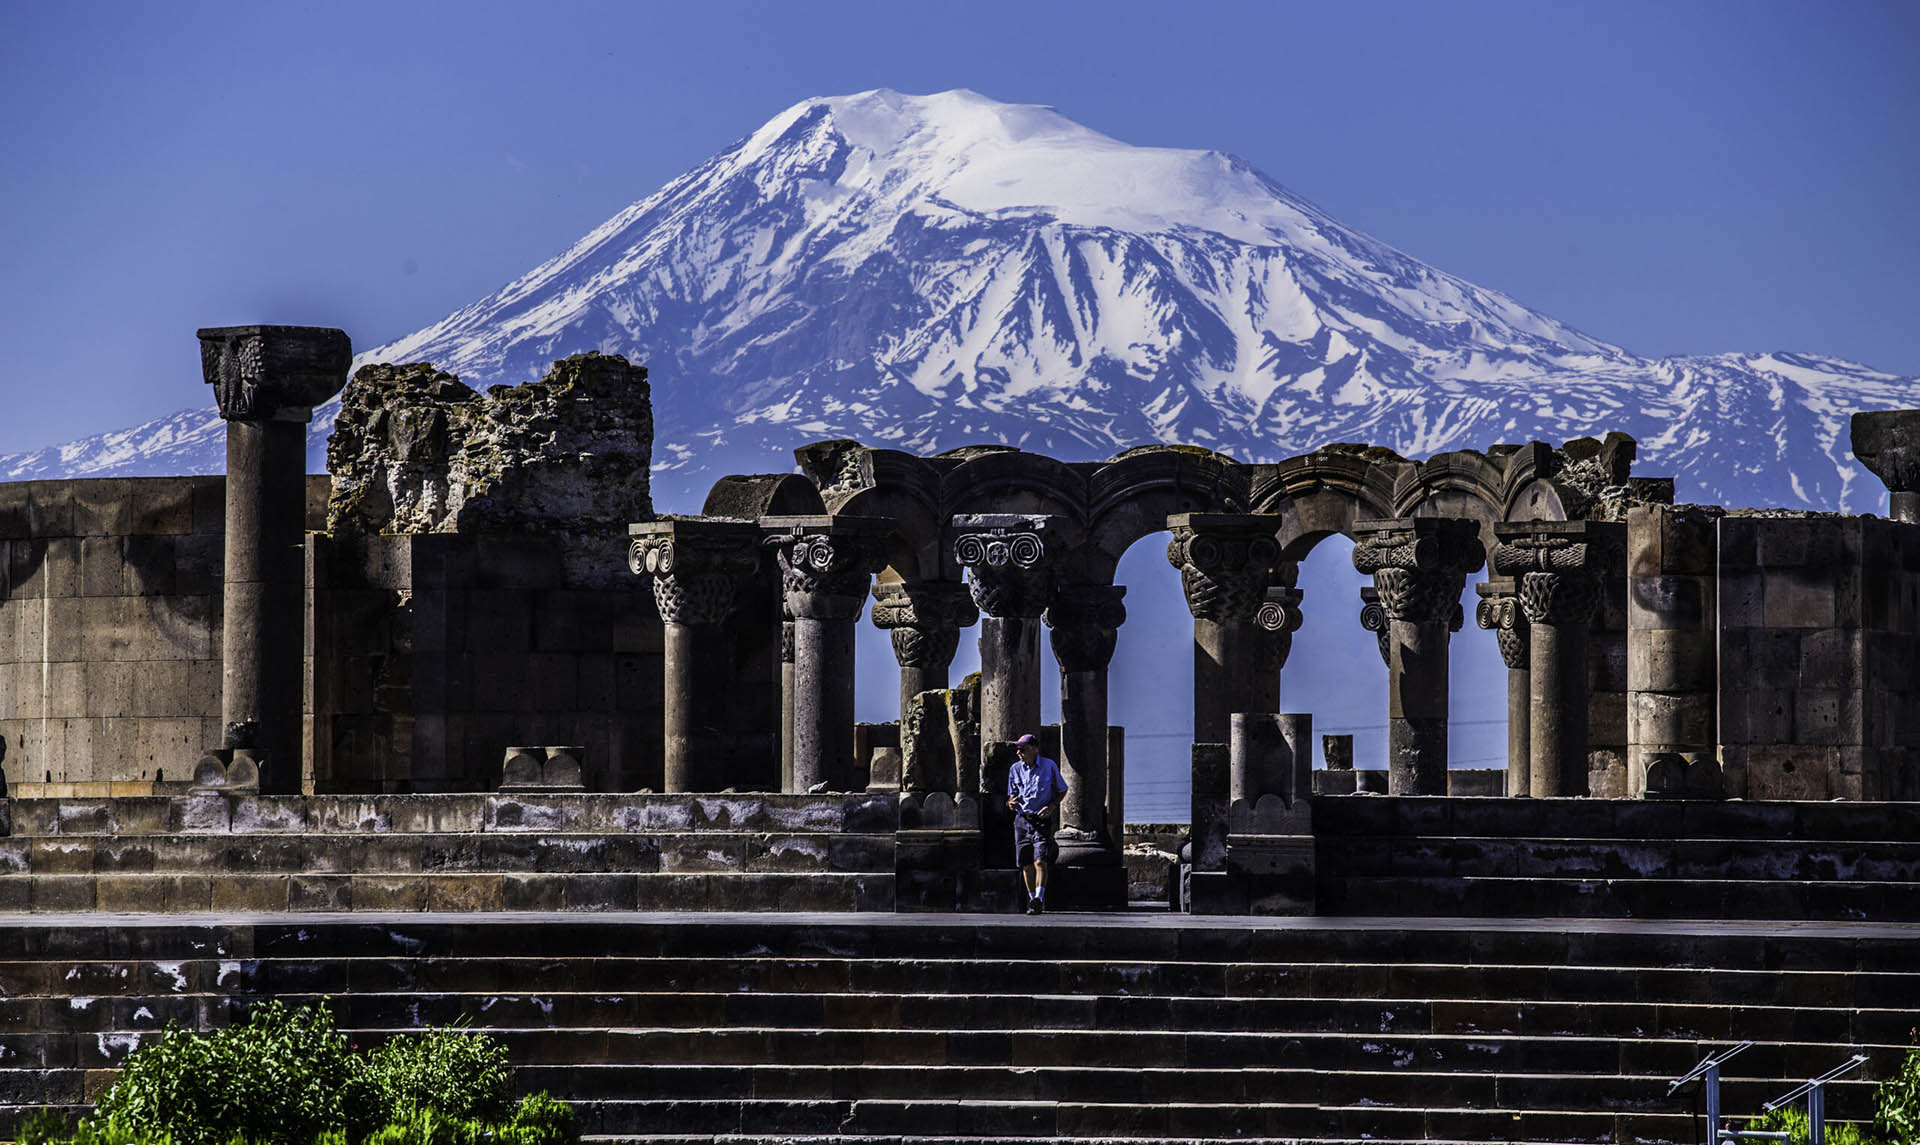 Zvartnots Cathedral of Armenia